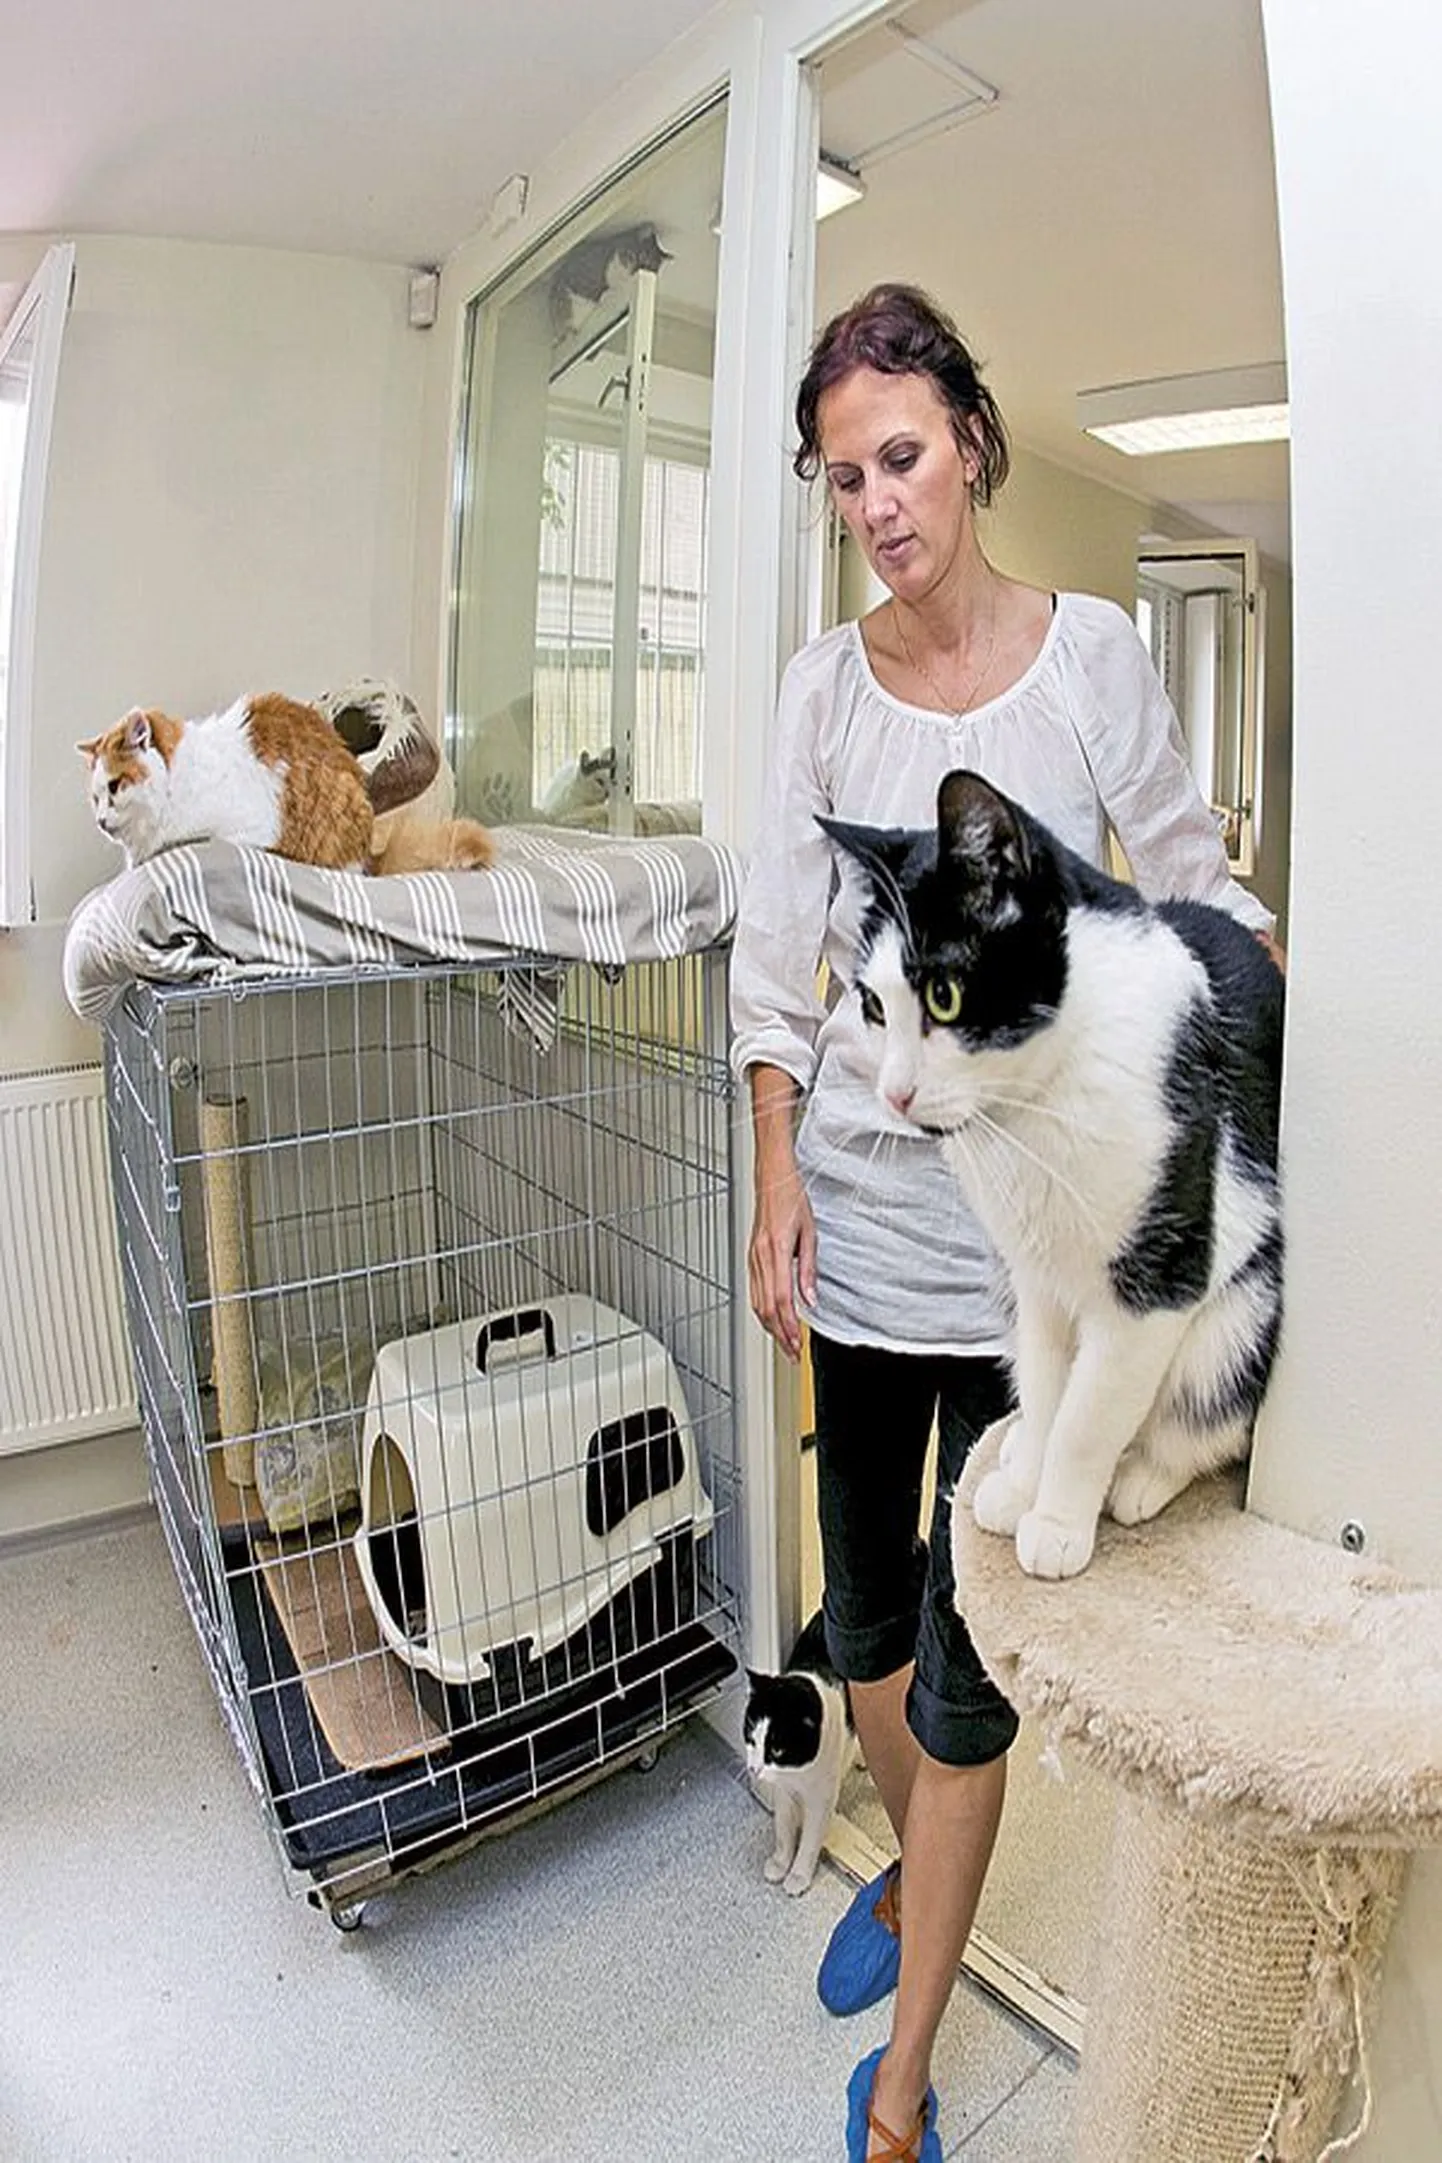 Kasside Turvakodu vabatahtlik Edit Kauts julgustab inimesi võtma endale ka pelglikke kasse, sest nad kasvavad kodusoojuses sõbralikuks.